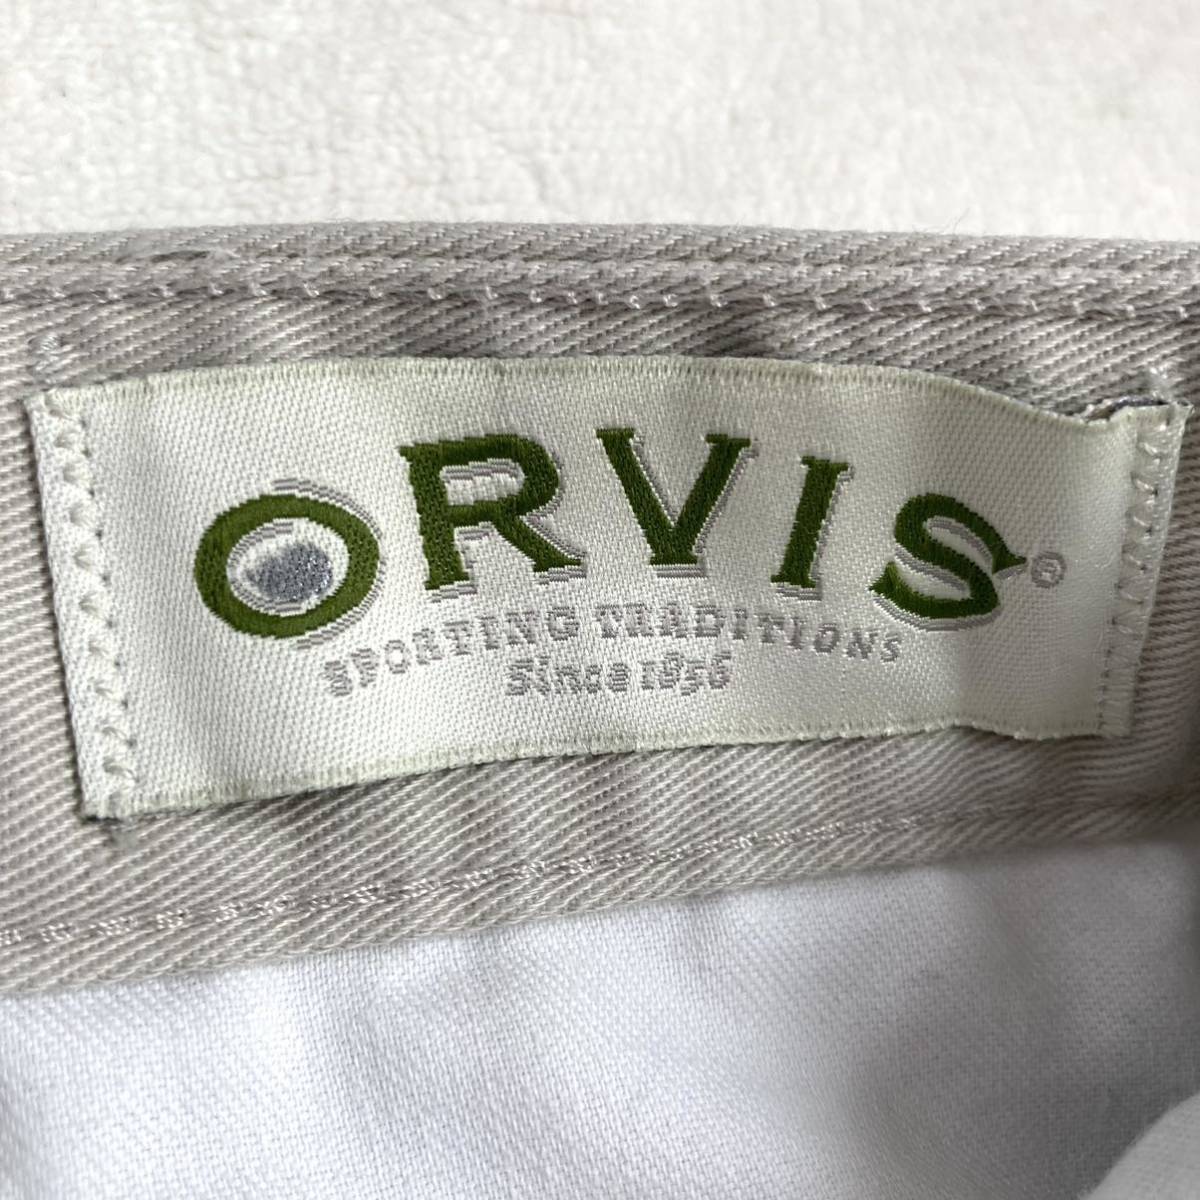 ORVIS Orbis 00s chino pants tiger u The - cloth USA made work pants 